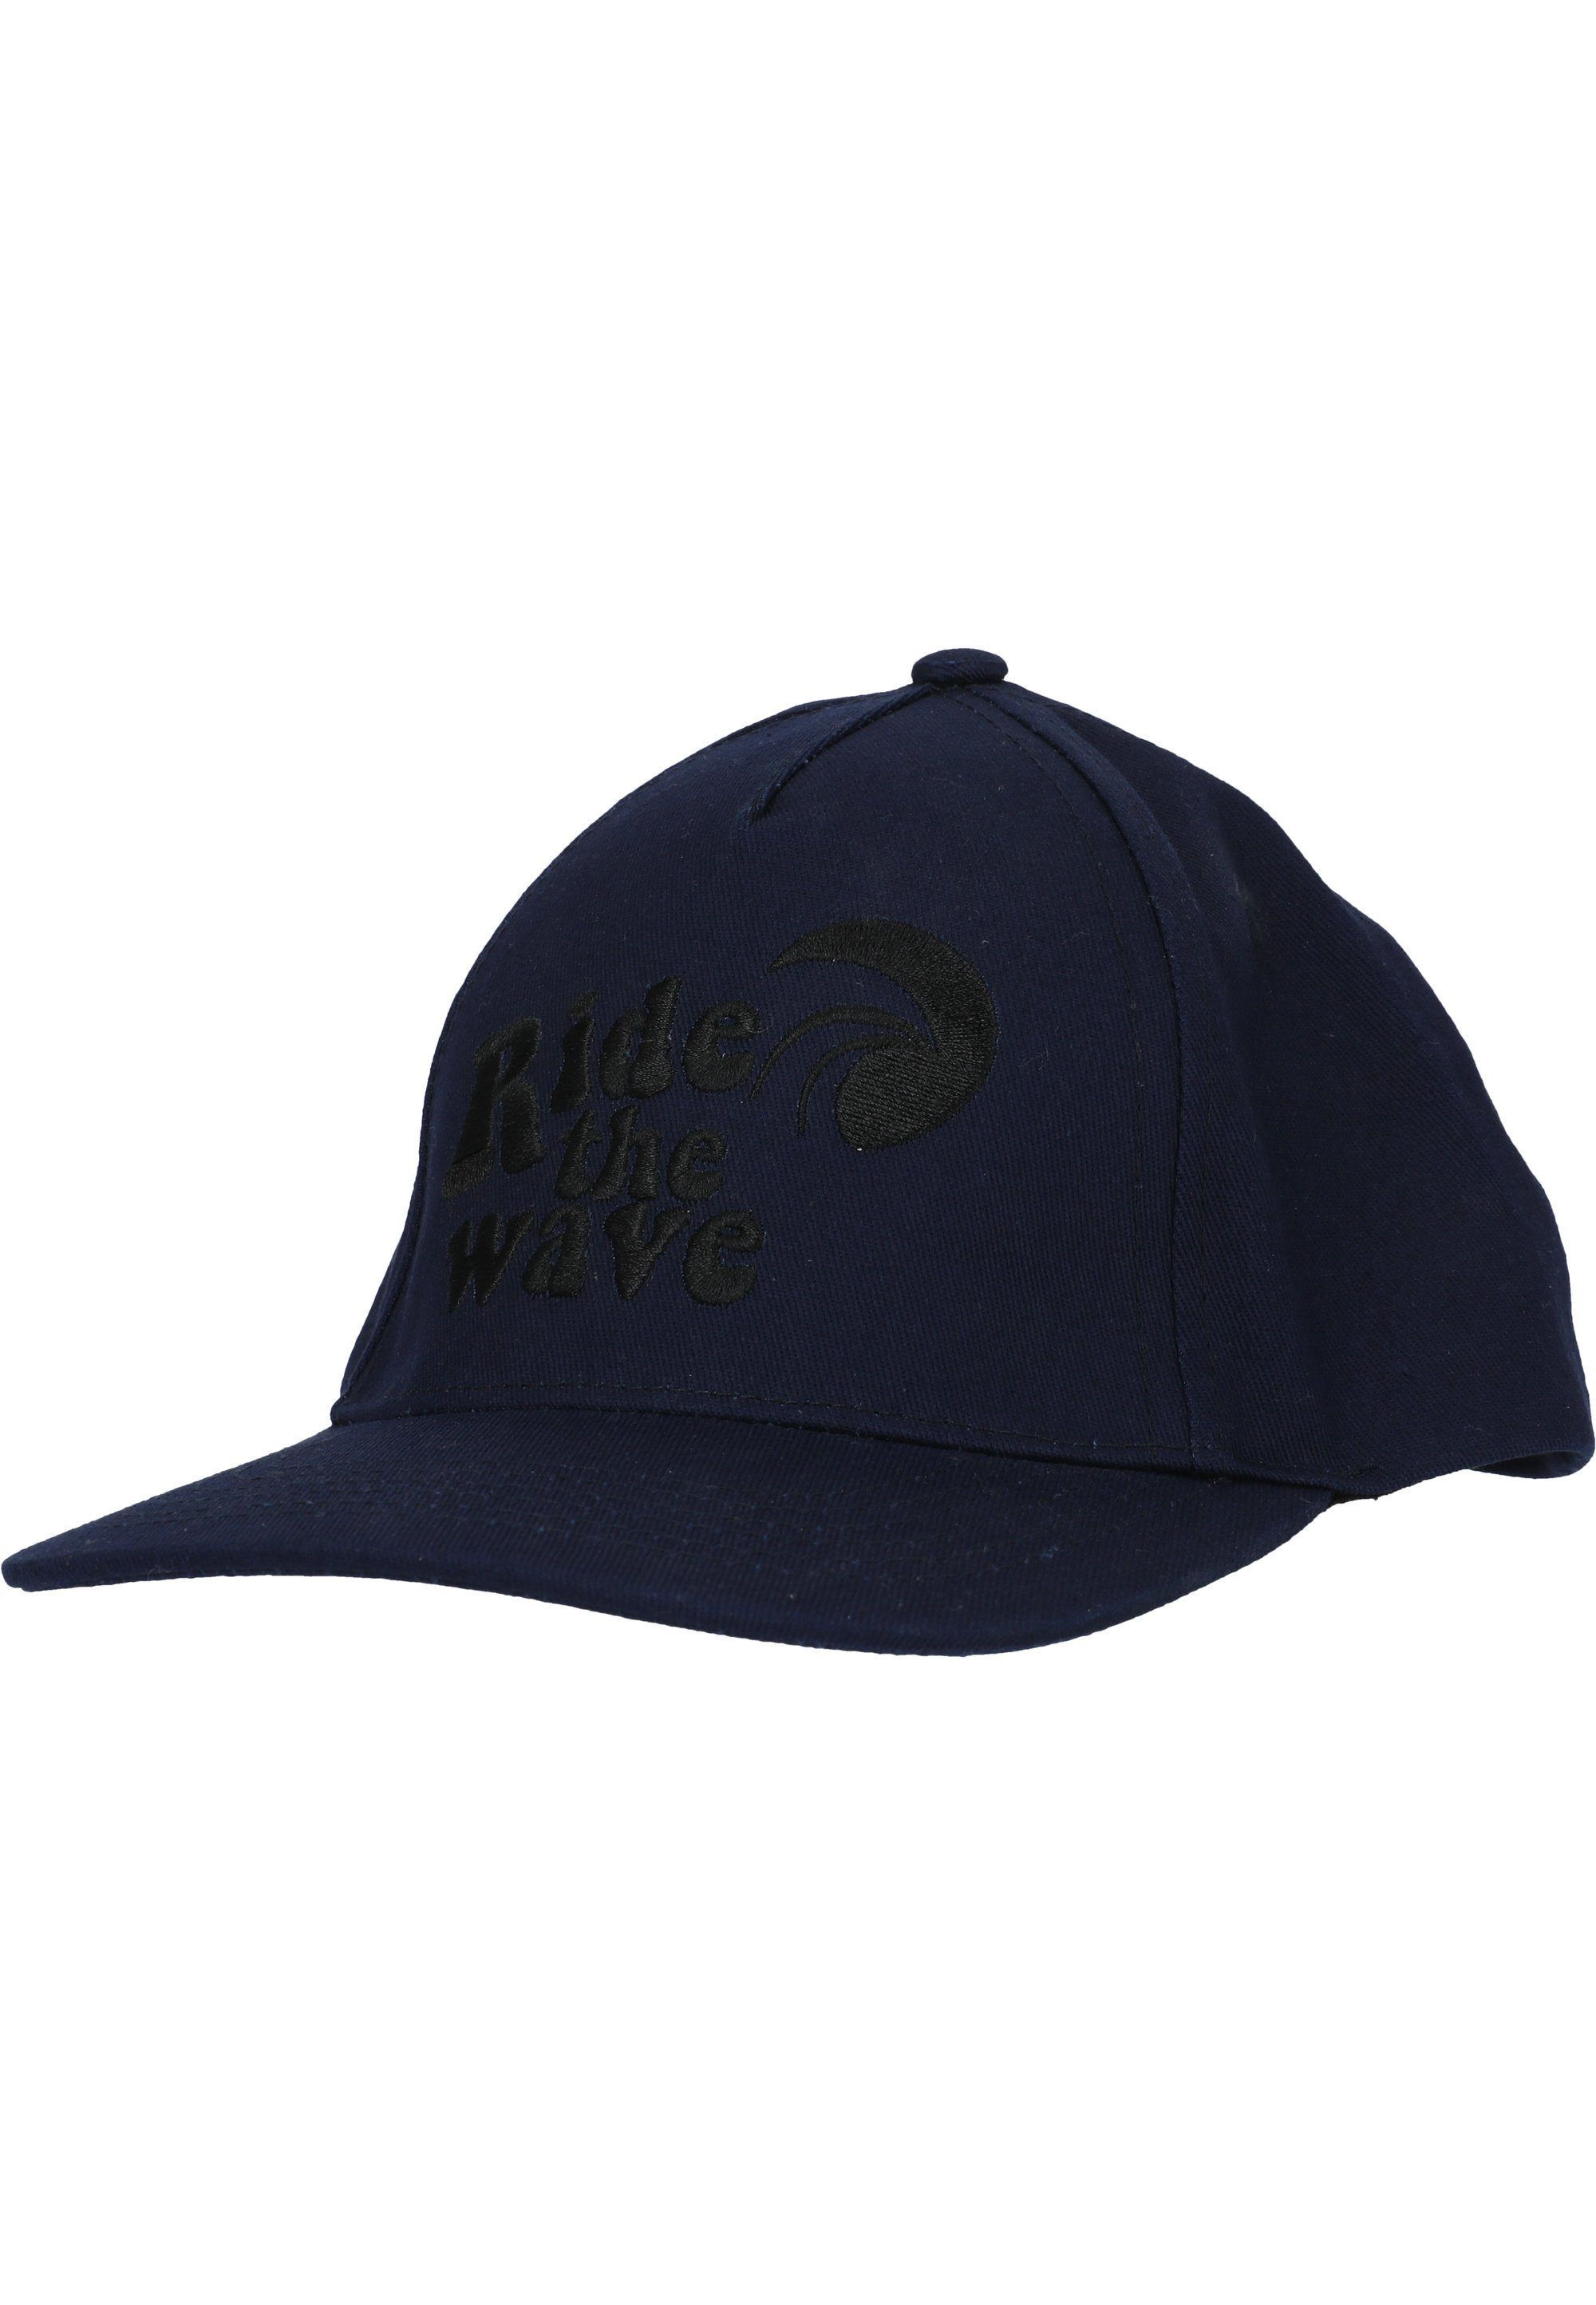 ZIGZAG stylischer Cap Dicaprio Stickerei dunkelblau Baseball mit